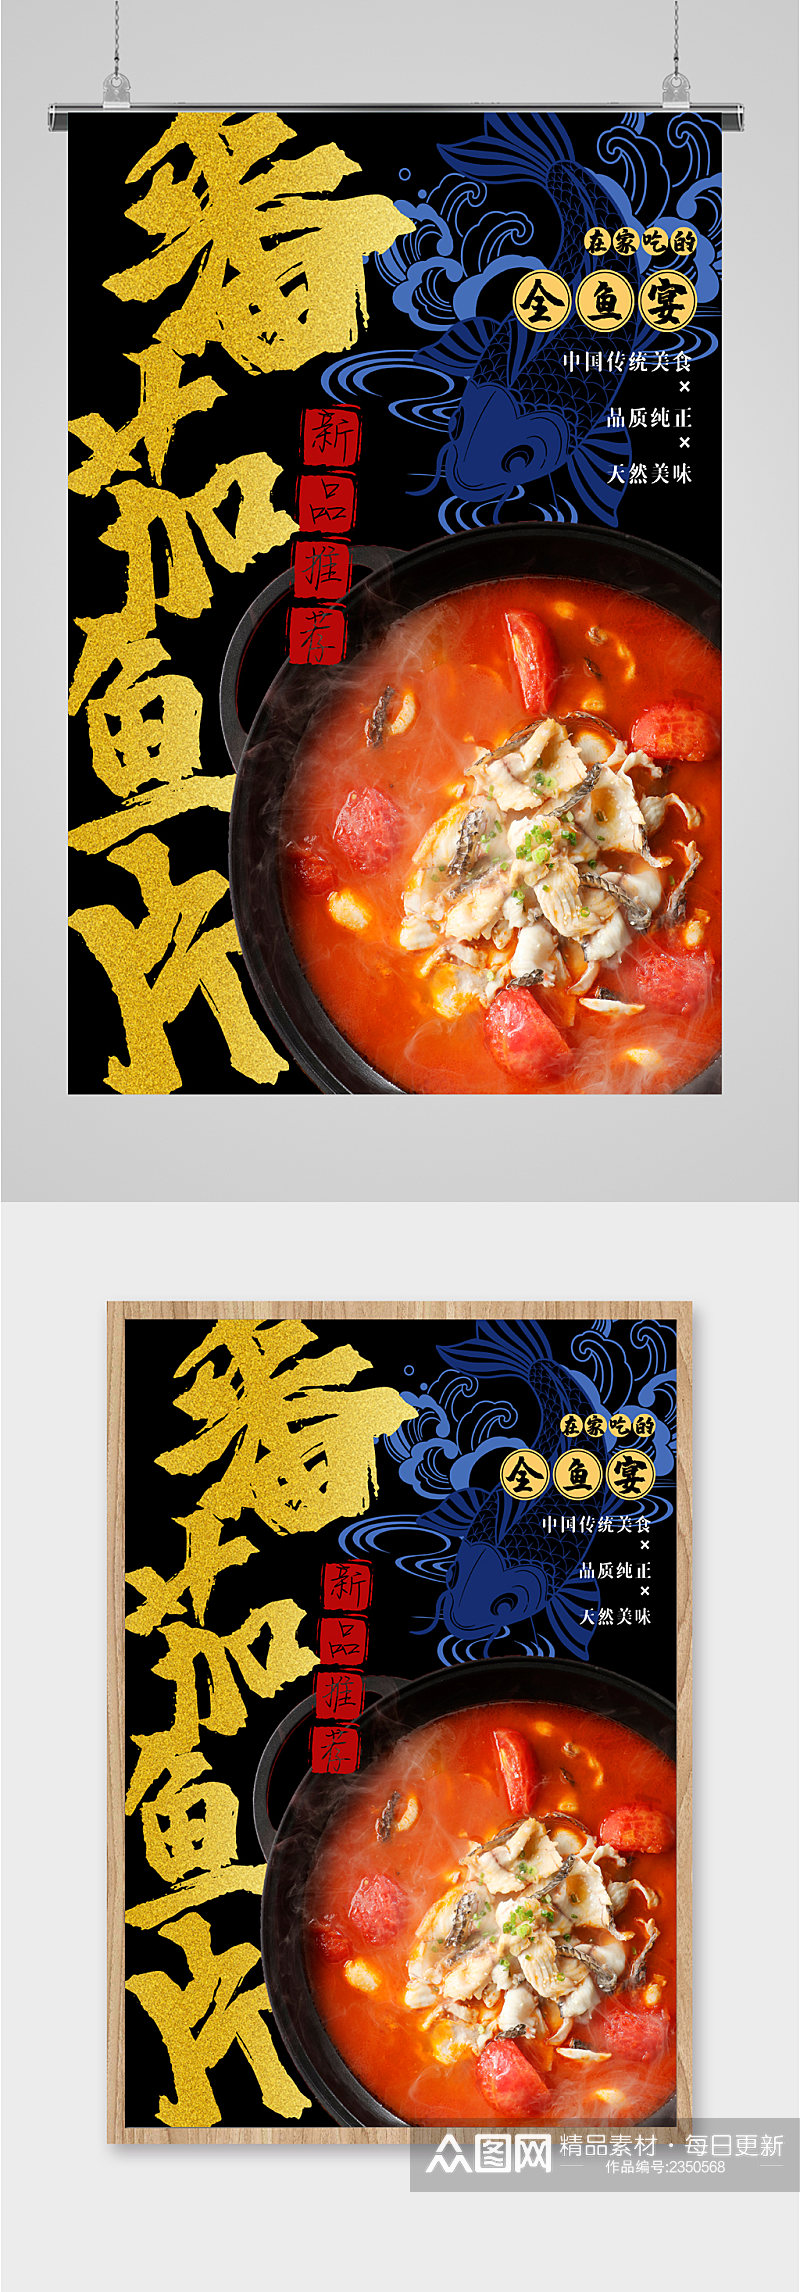 番茄鱼片特色美食海报素材